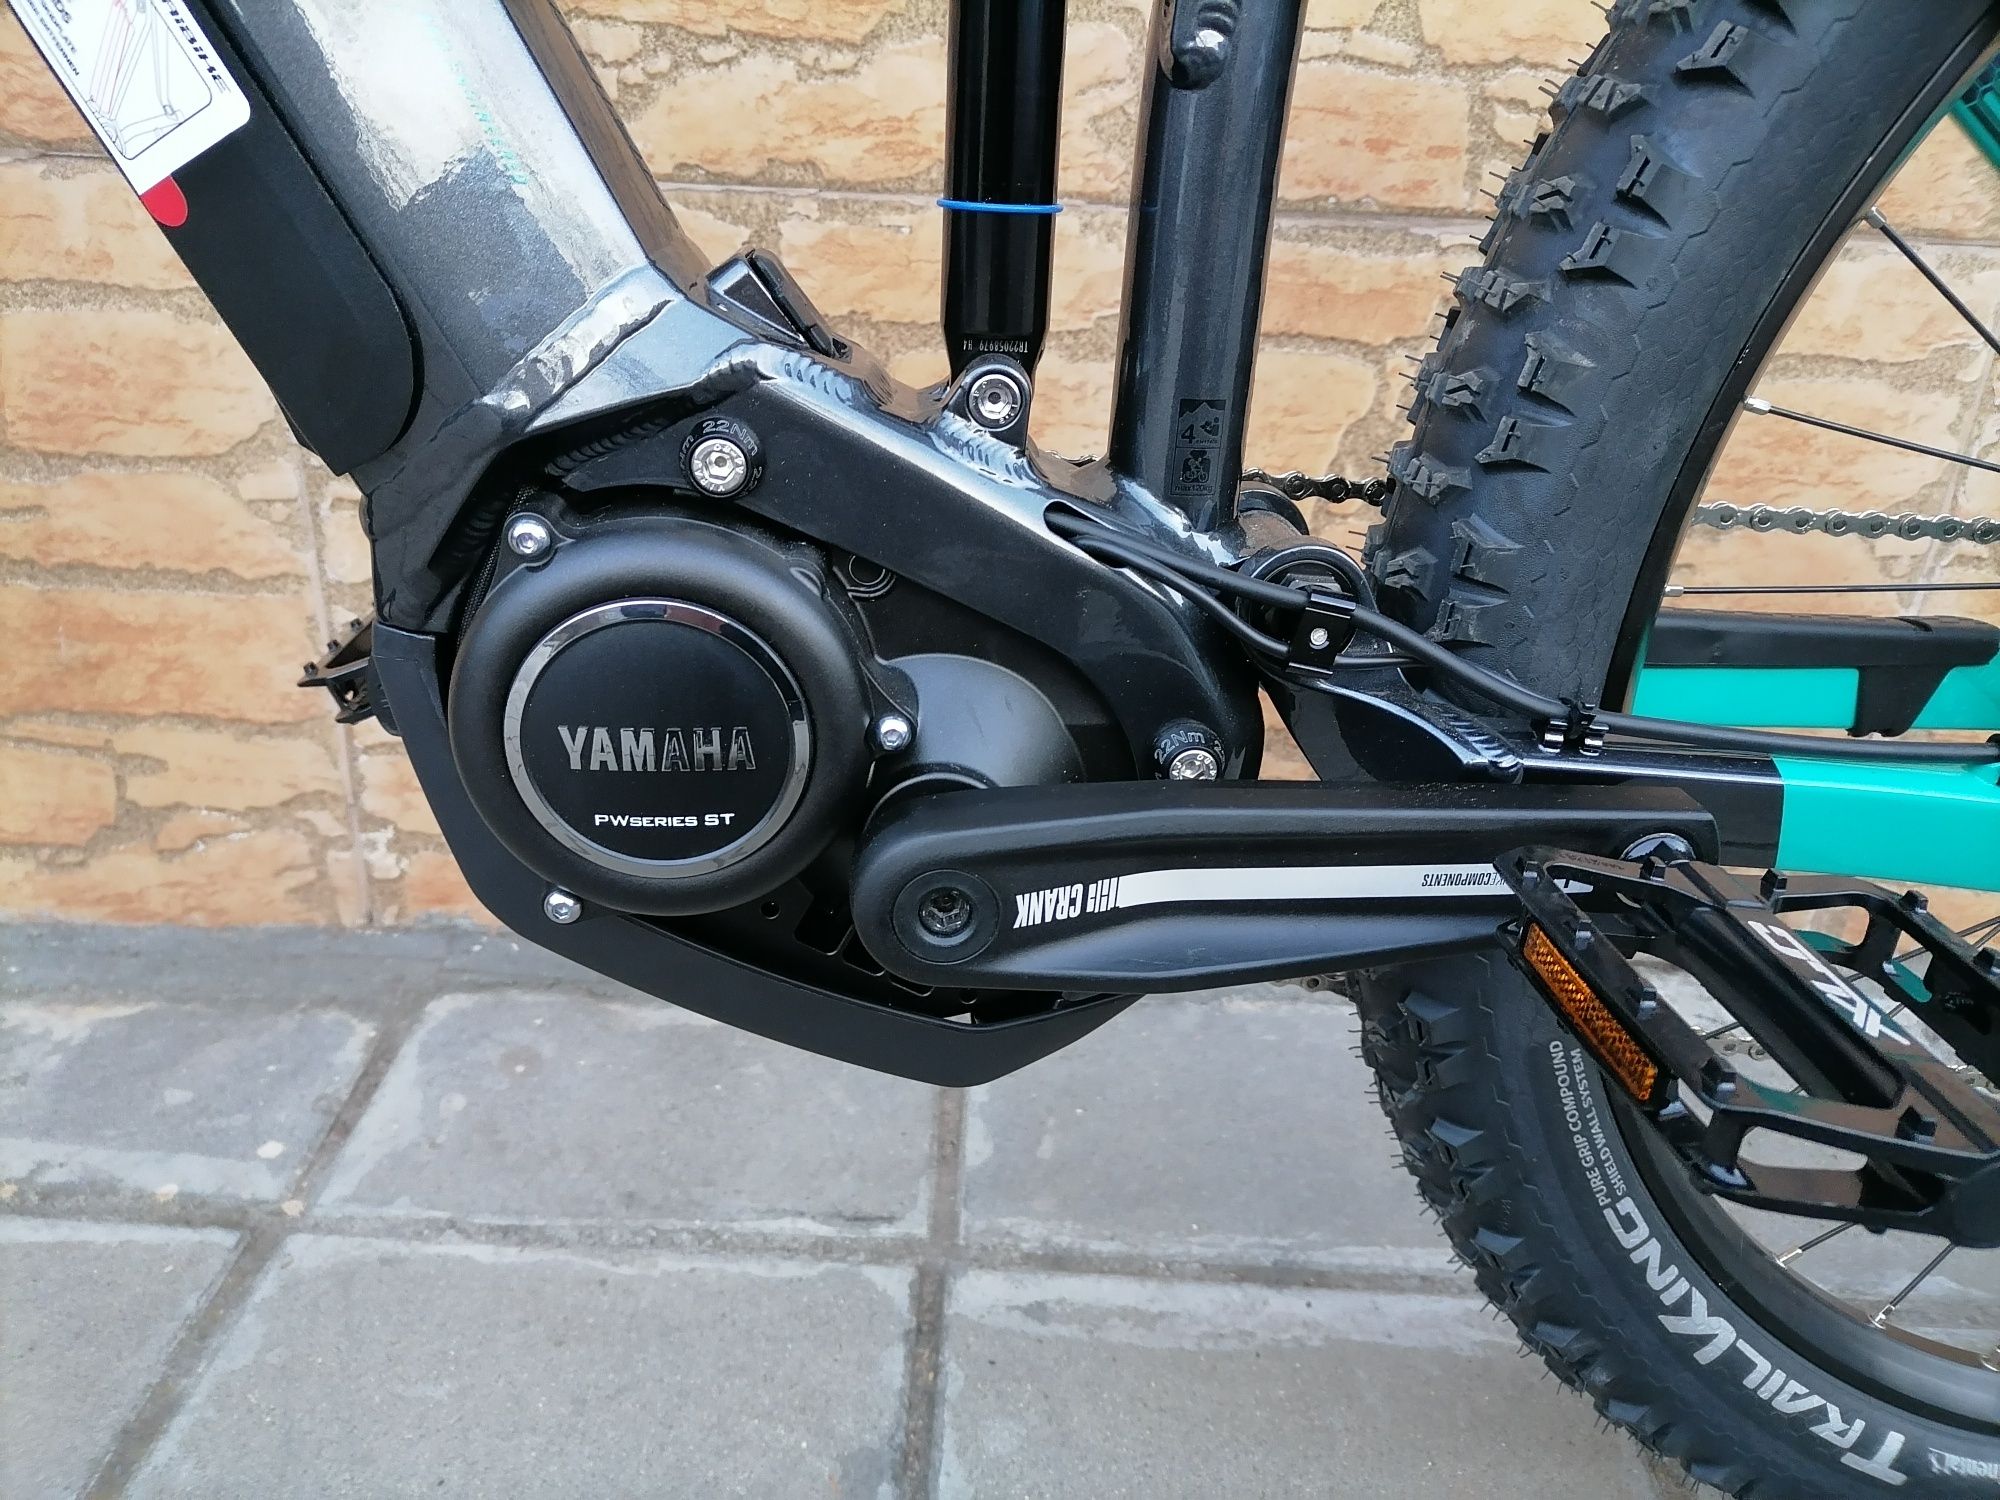 Нов електрически велосипед e-bike Halbike ALMNT1